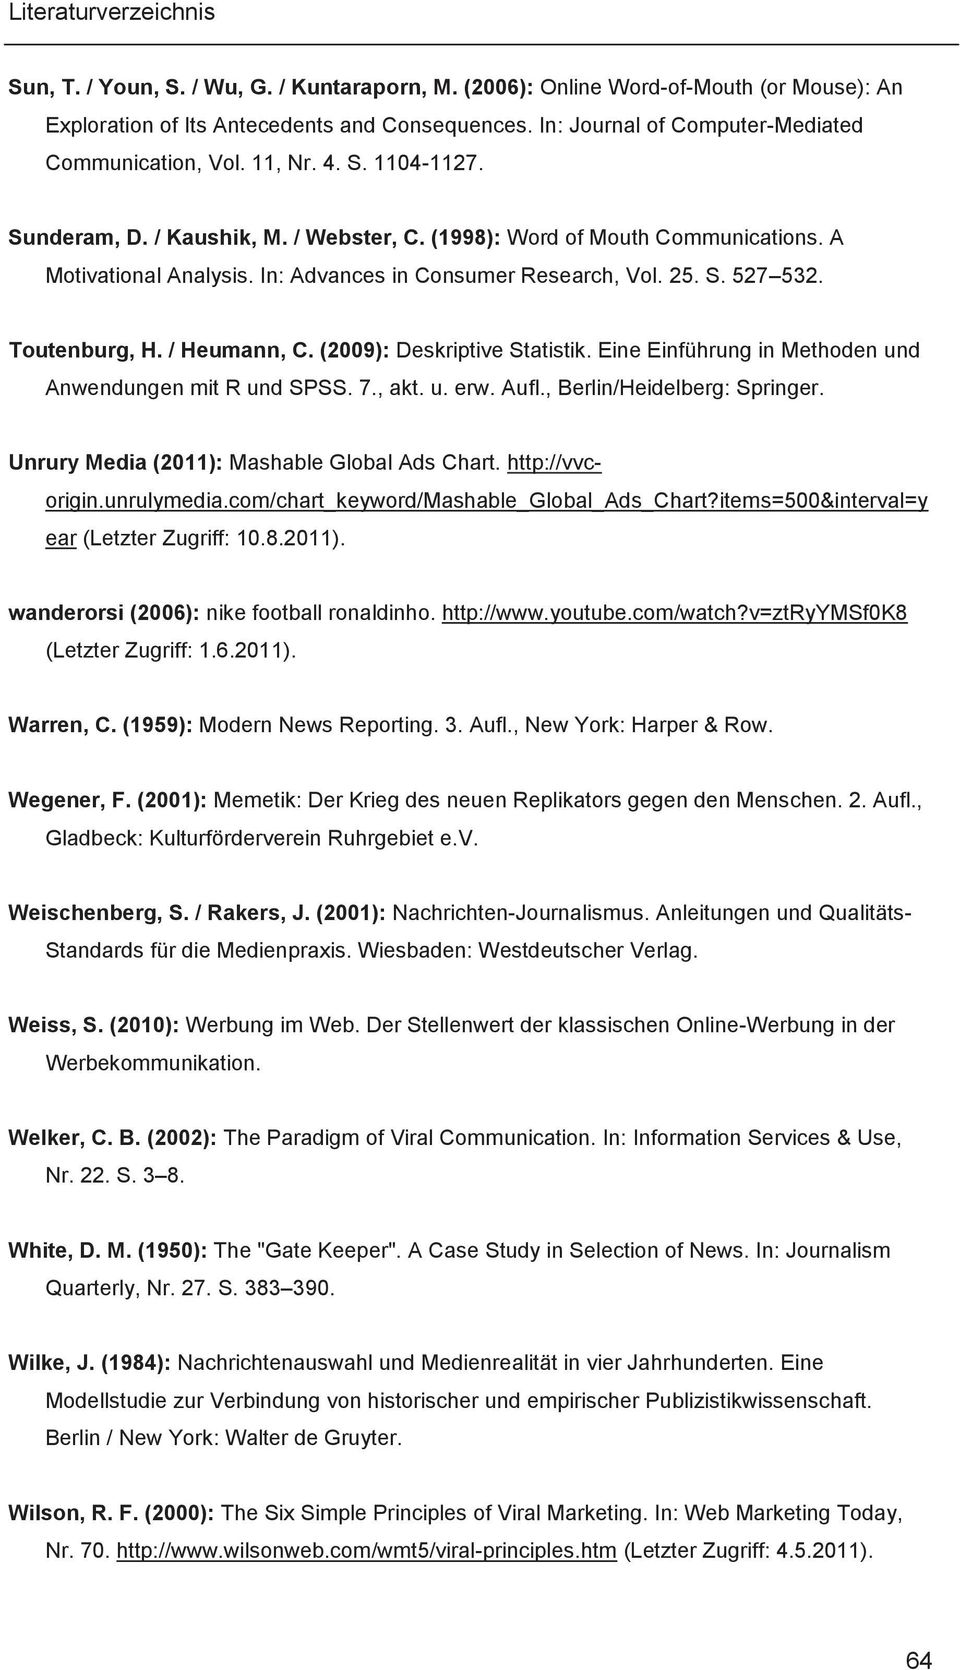 / Heumann, C. (2009): Deskriptive Statistik. Eine Einführung in Methoden und Anwendungen mit R und SPSS. 7., akt. u. erw. Aufl., Berlin/Heidelberg: Springer.